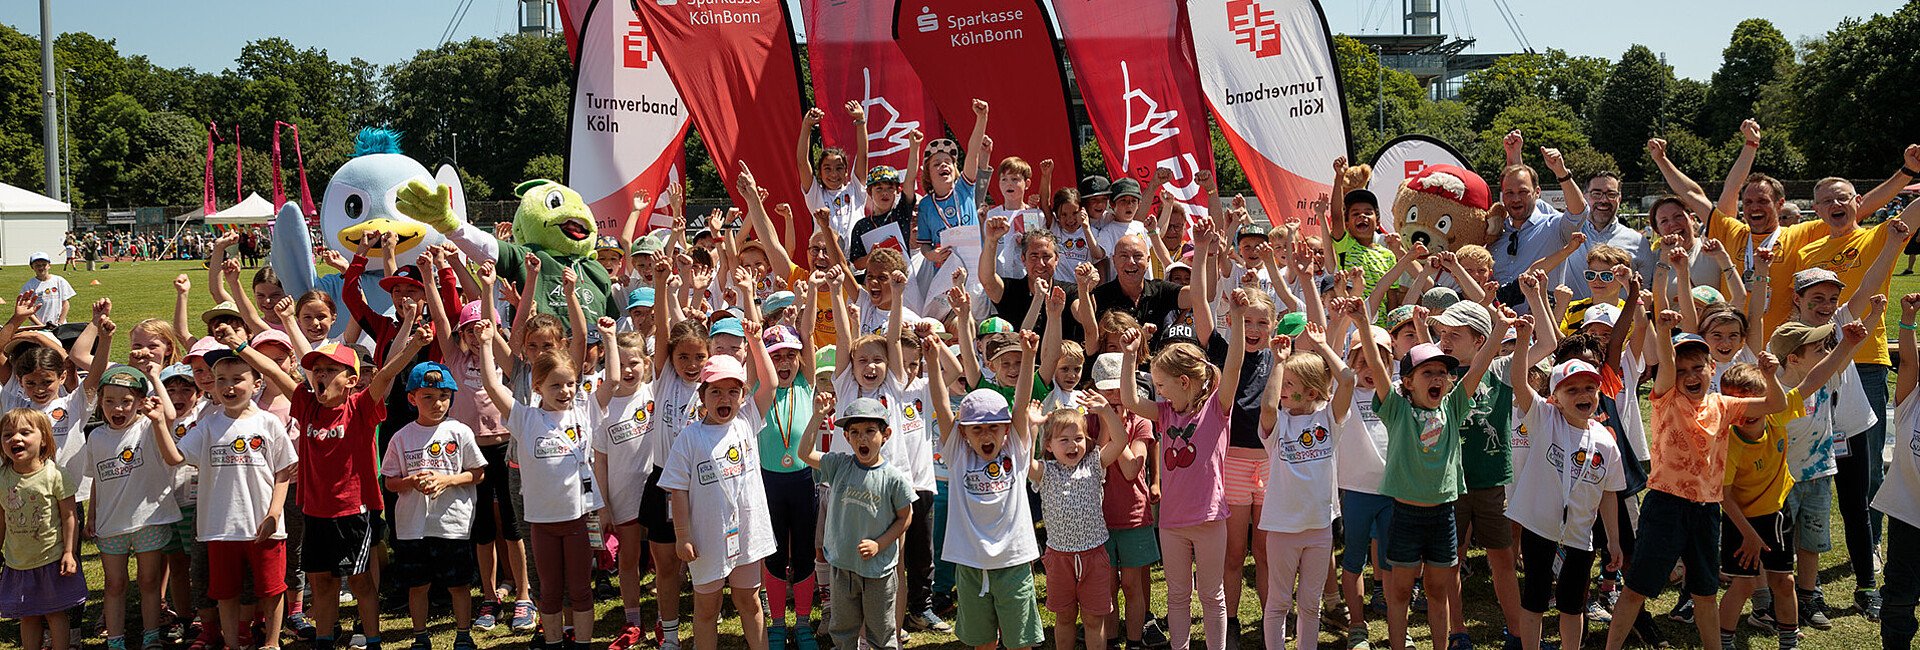 Kölner KinderSportFest - Gruppenbild